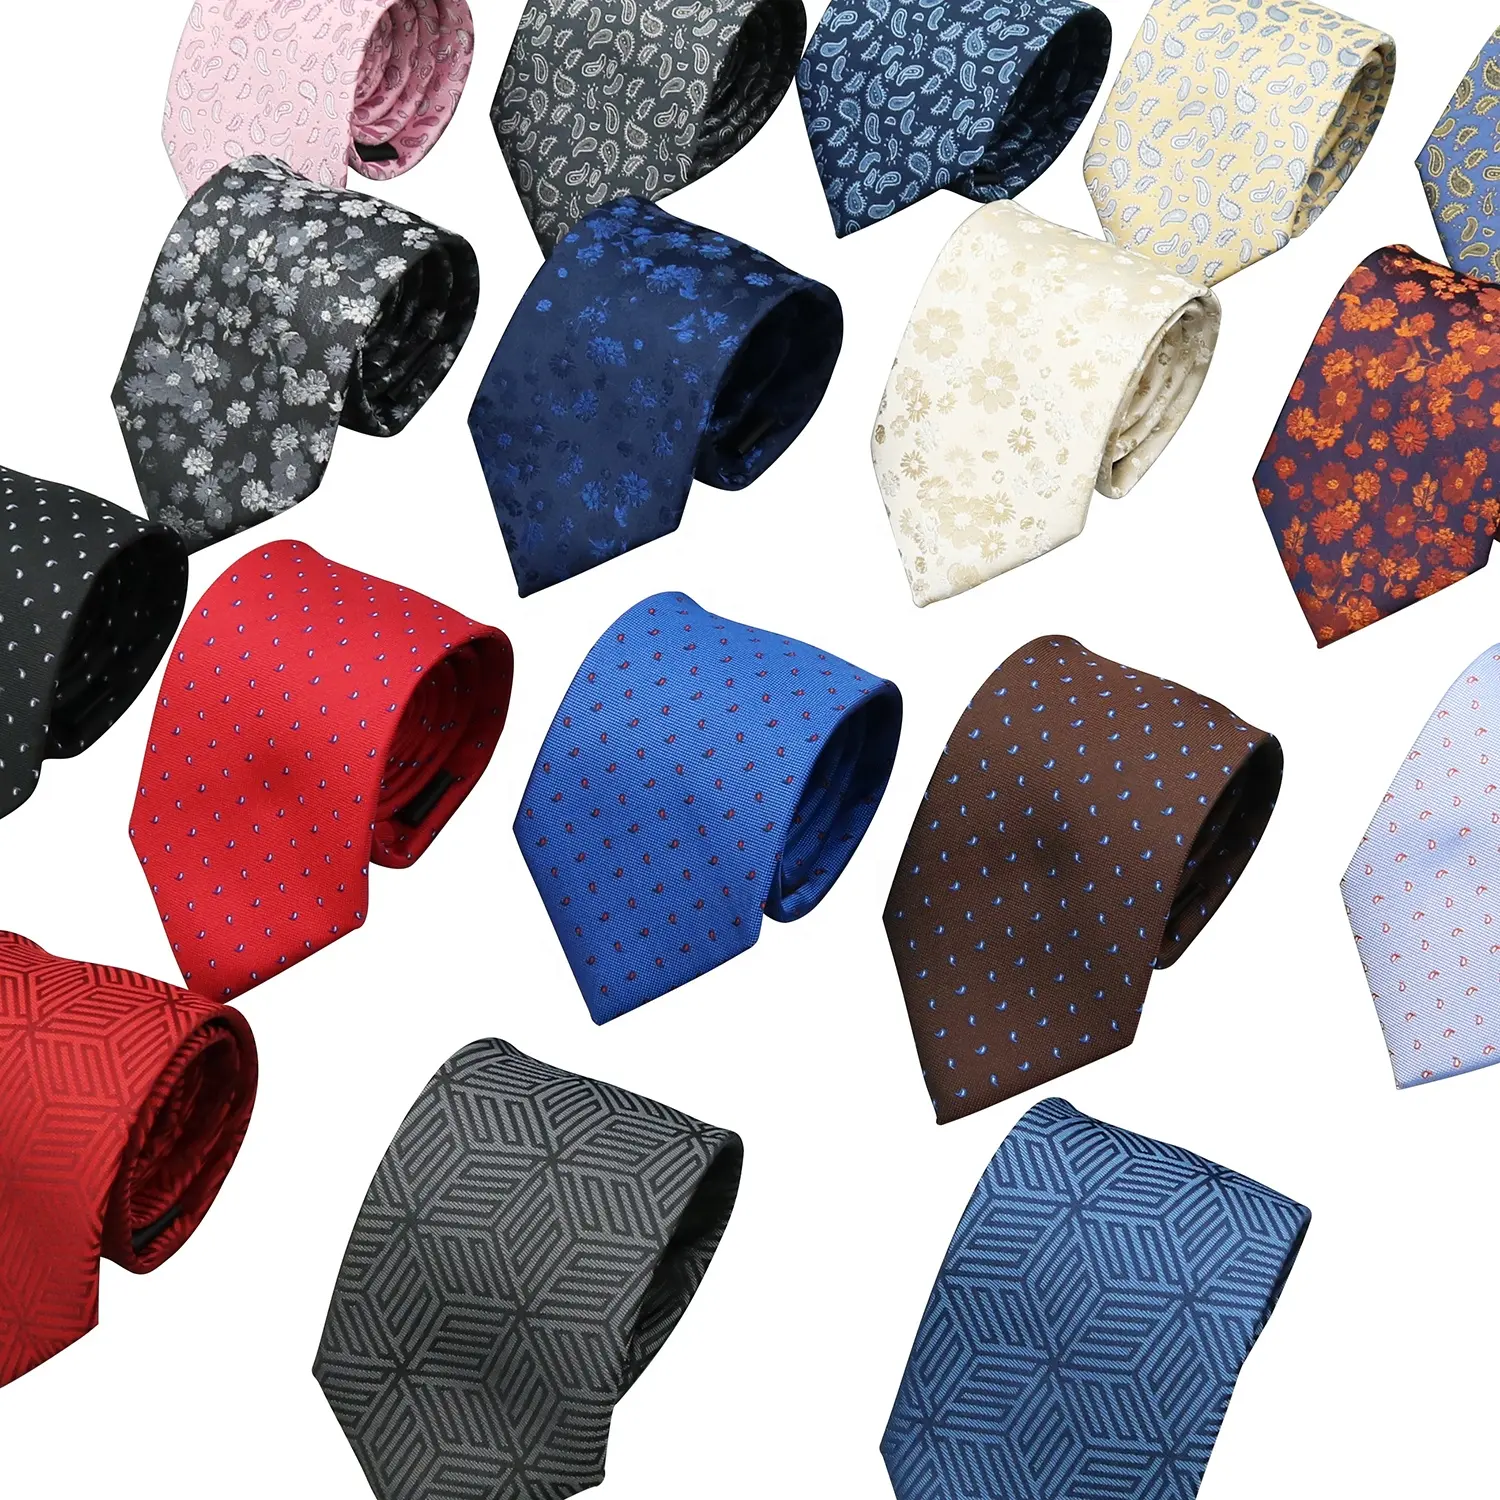 Produttore Gravatas Homens Pattern abbigliamento cravatte e accessori Jacquard Business set di cravatte in pura seta per uomo italiano